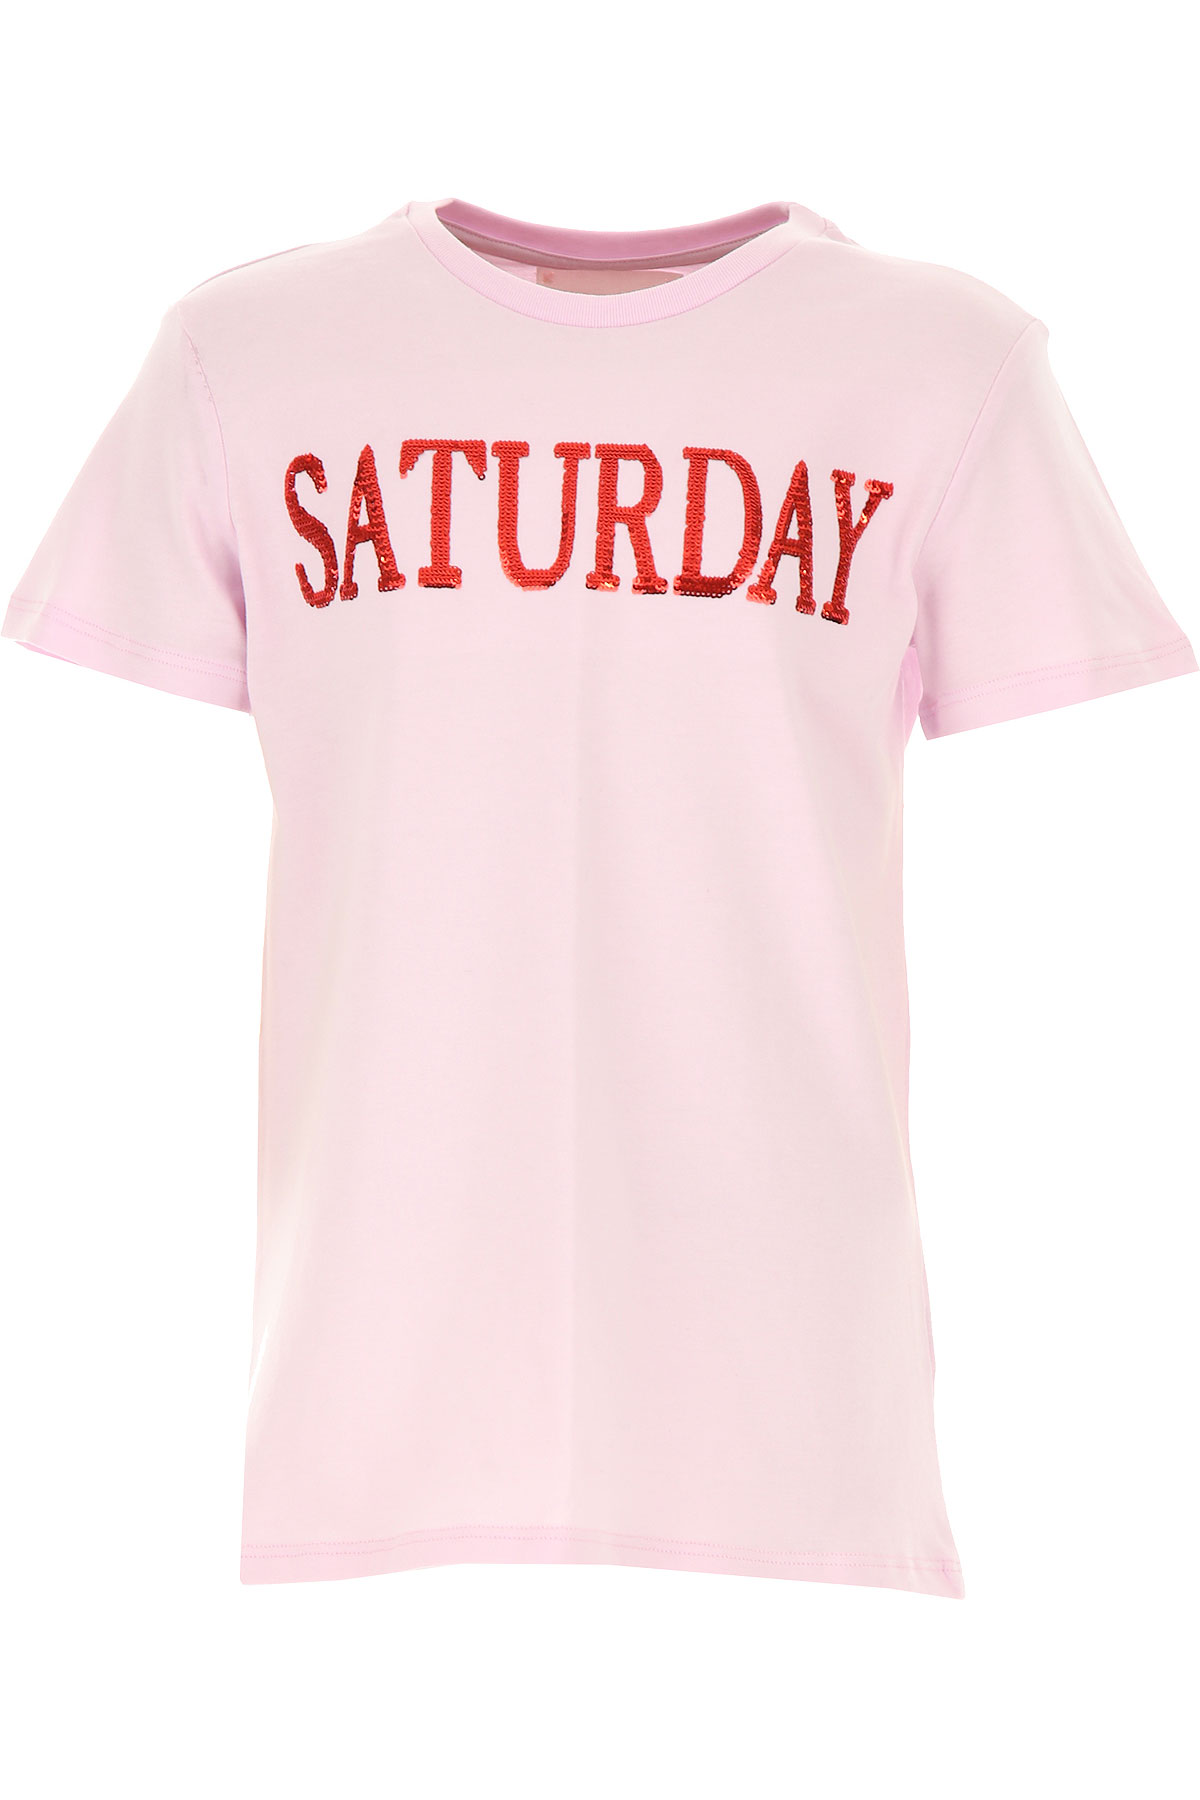 Alberta Ferretti Kinder T-Shirt für Mädchen Günstig im Sale, Pink, Baumwolle, 2017, 10Y 12Y 14Y 4Y 6Y 8Y